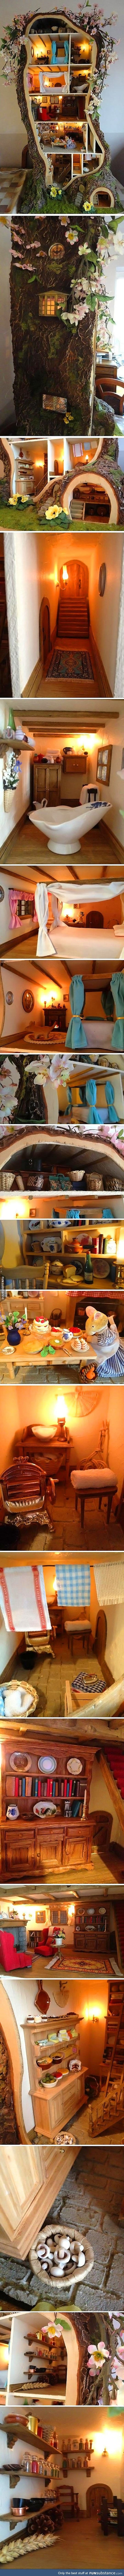 Mini mouse tree dolls house